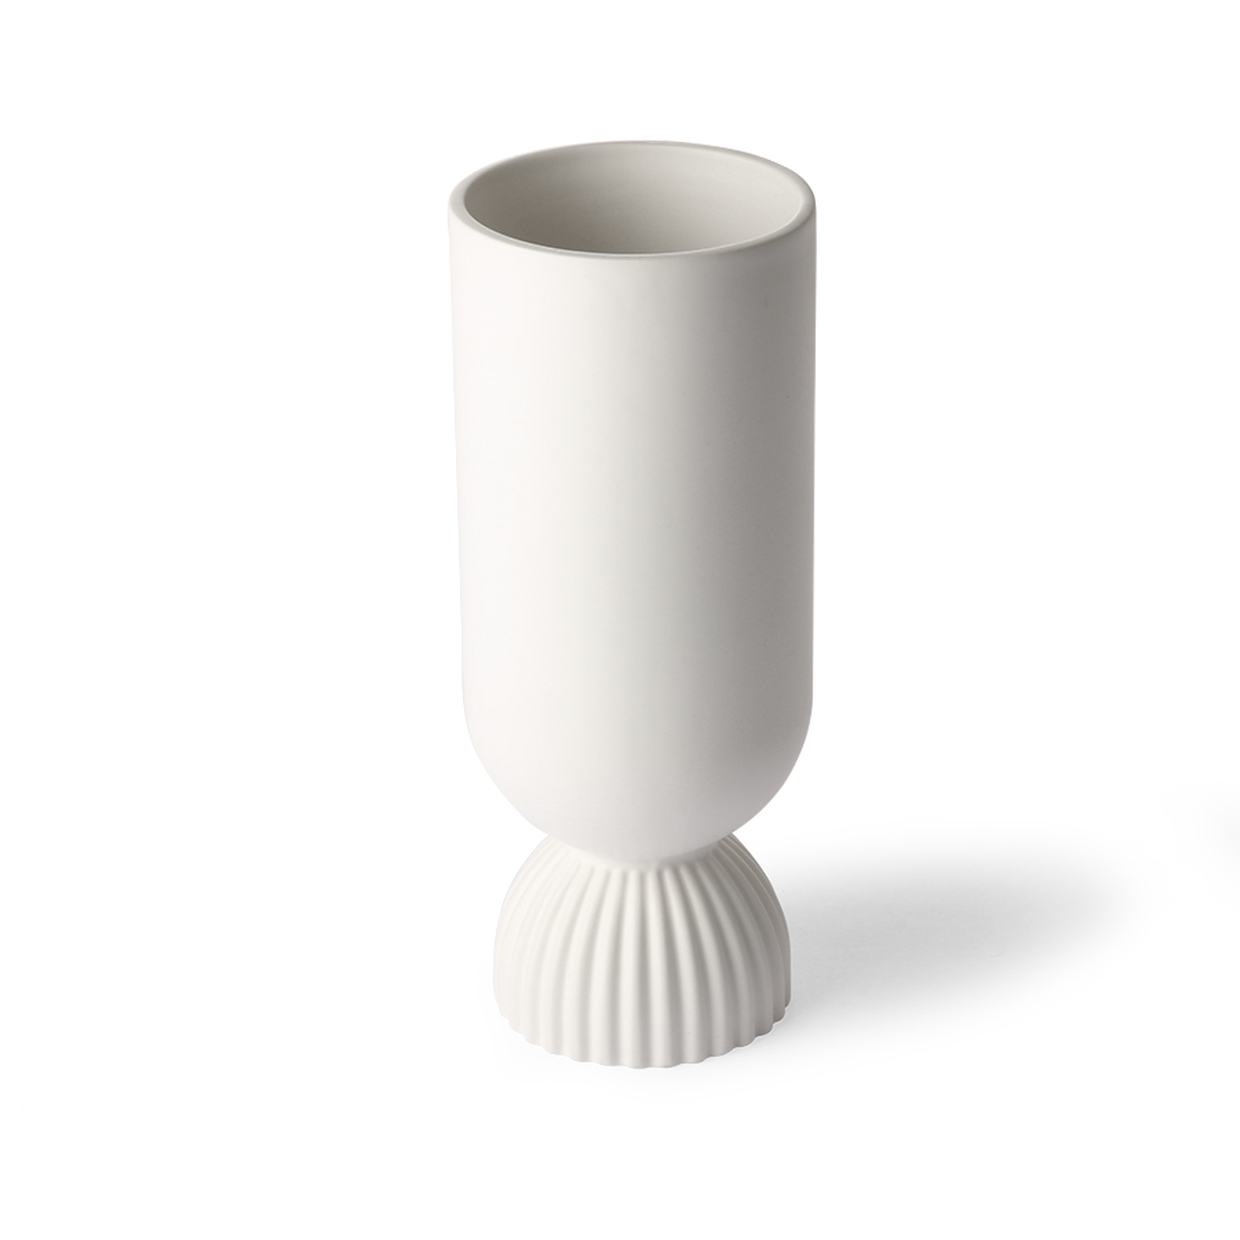 Ceramic flower vase ribbed base white